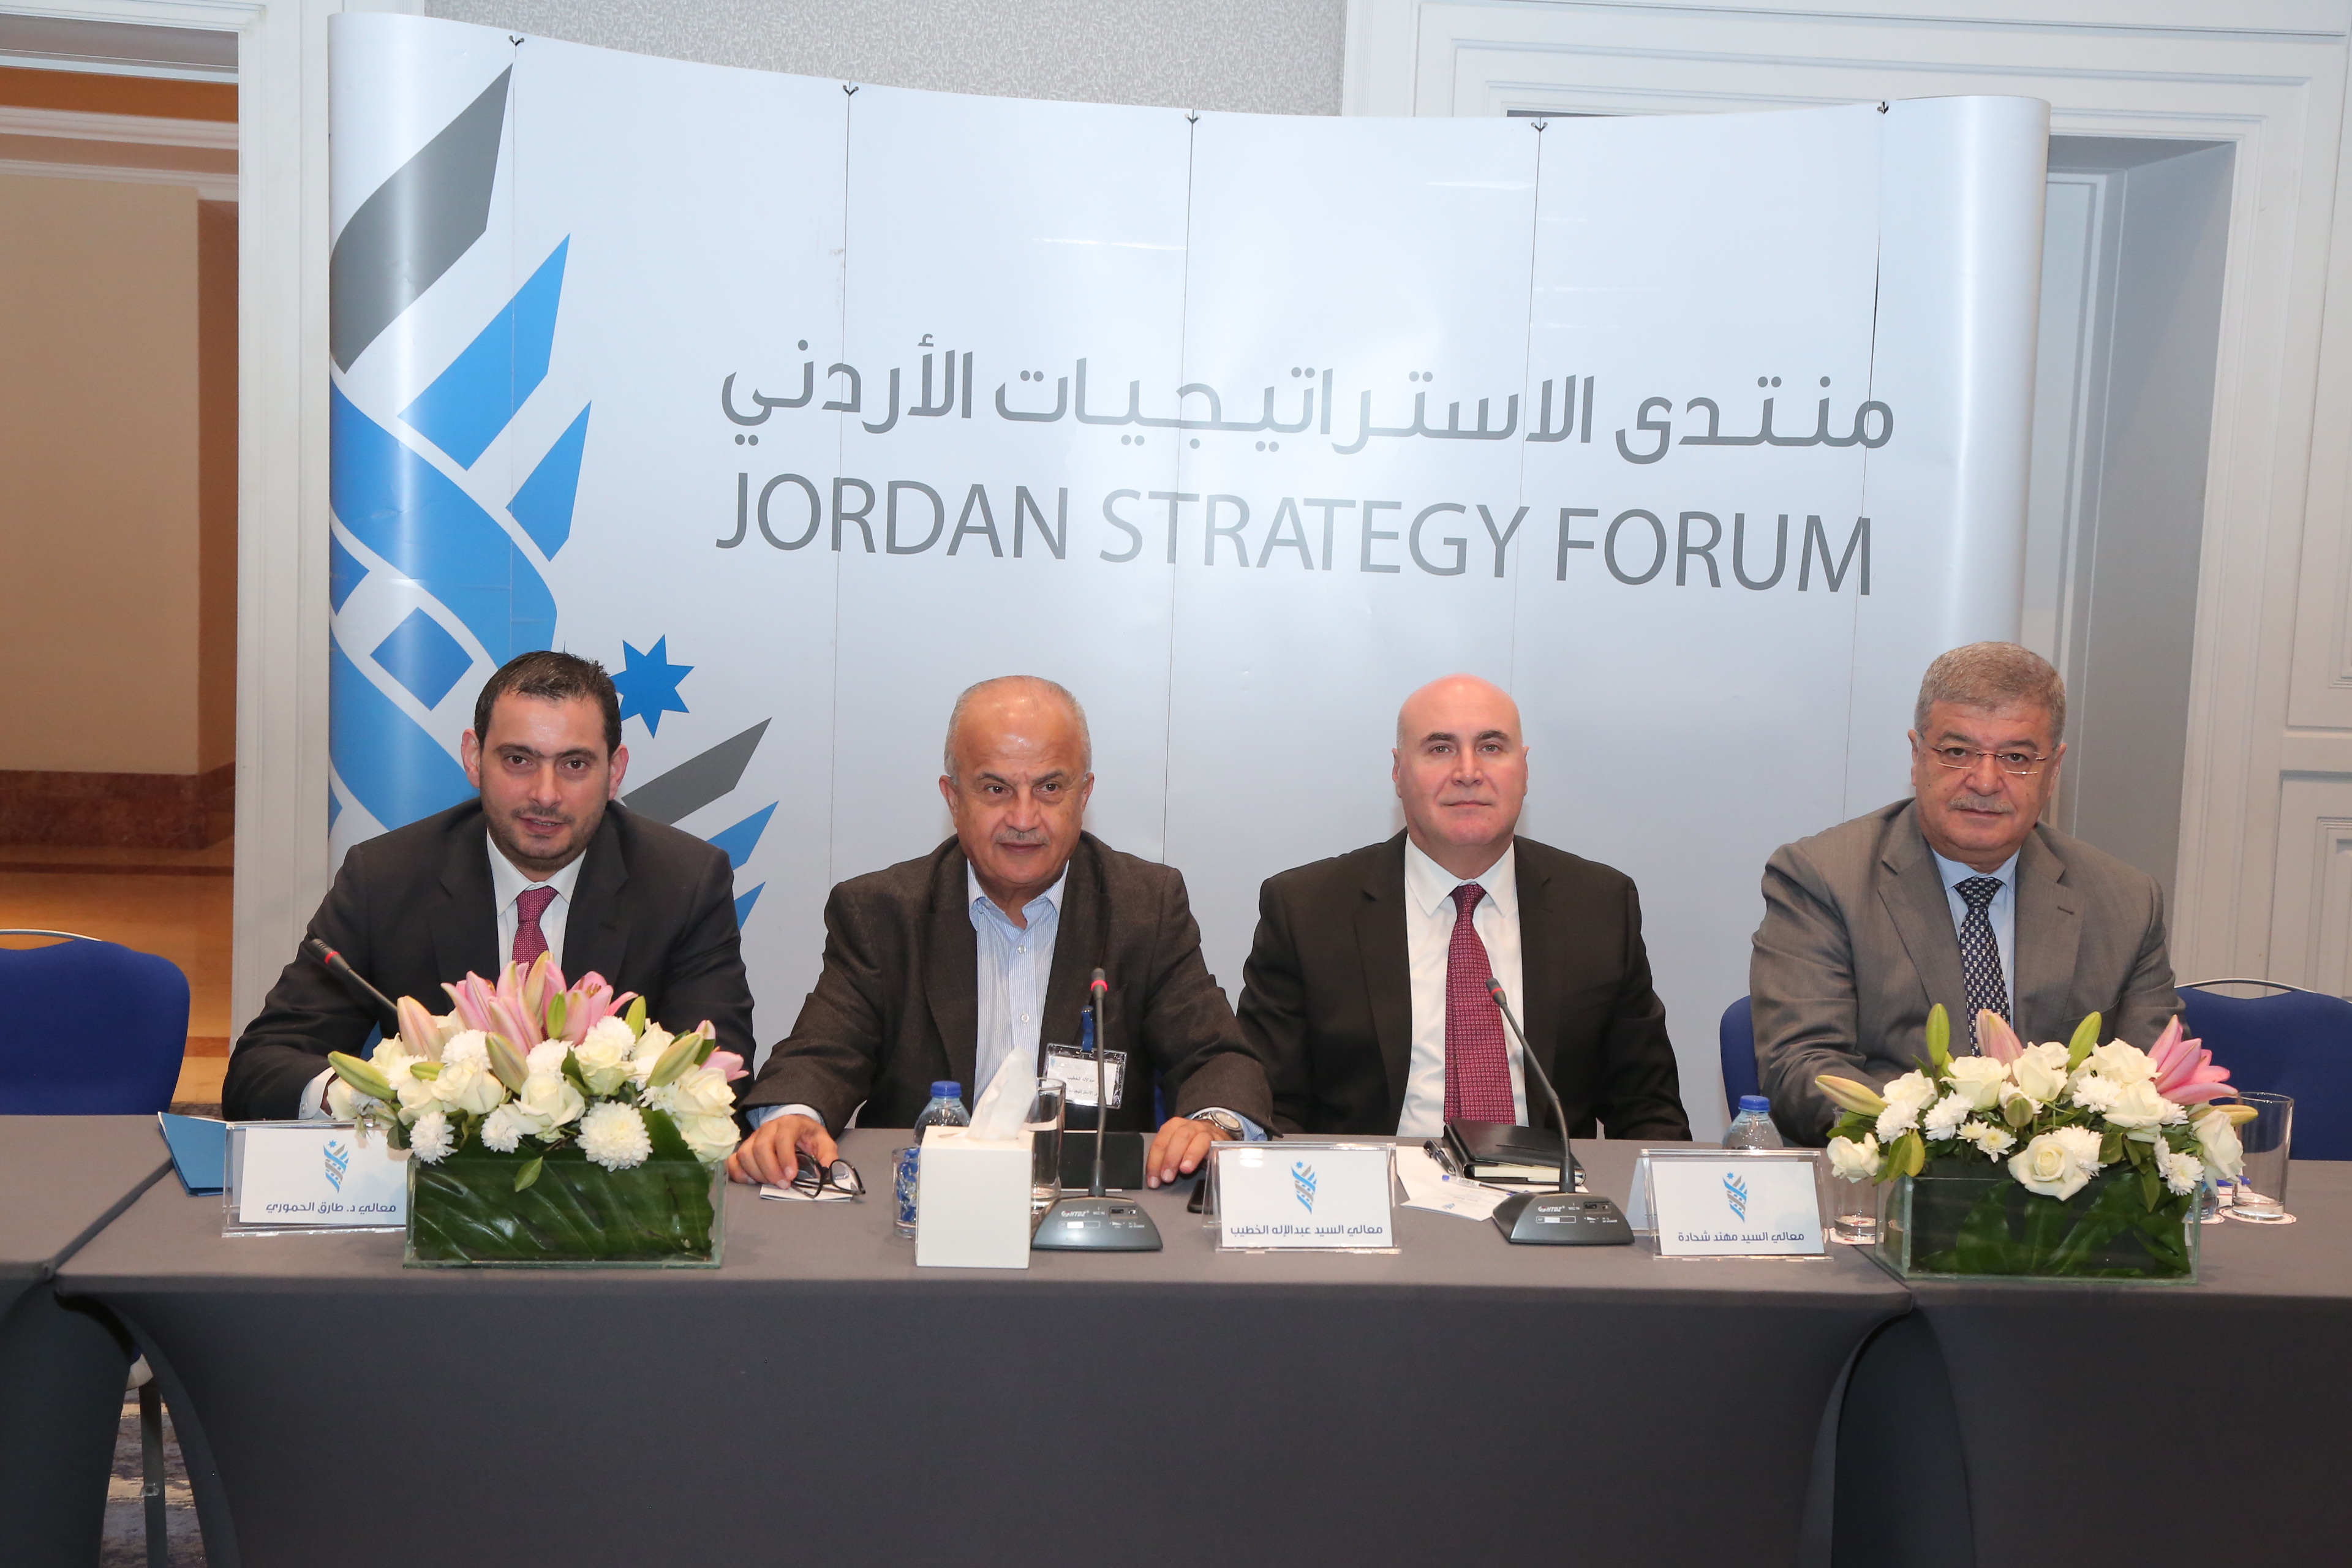 البنك الأهلي الأردني يرعى الجلسة الحوارية لمنتدى الاستراتيجيات الأردني بعنوان "الأردن على مؤشر التنافسية العالمي 2018: الفرص والتحديات"